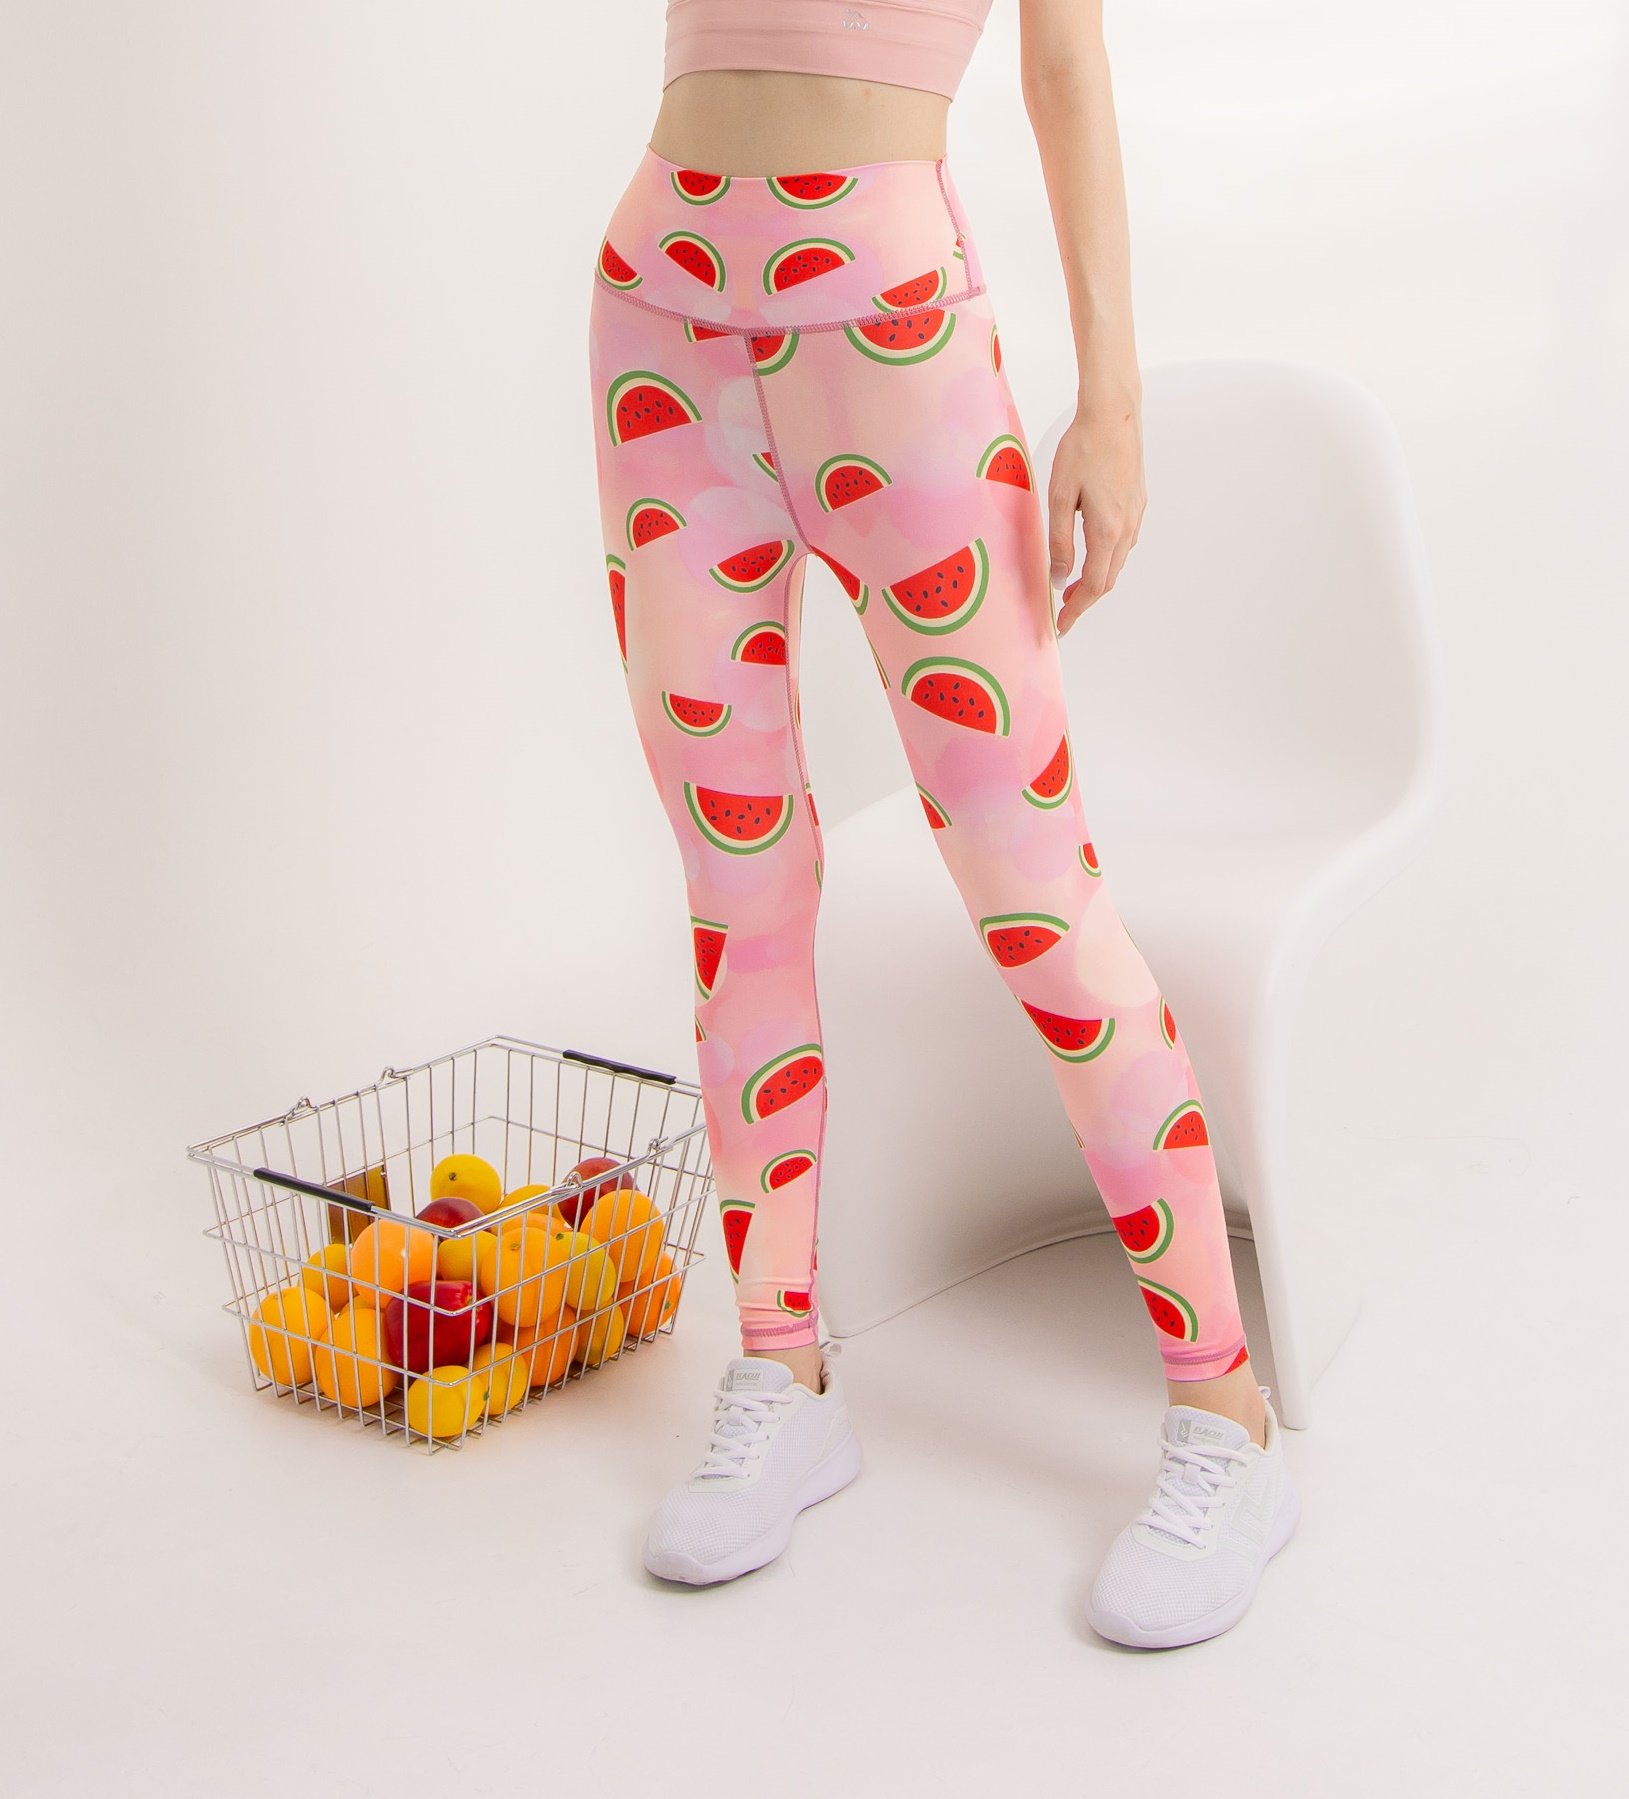 Mimee melon leggings - ชุดออกกำลังกาย